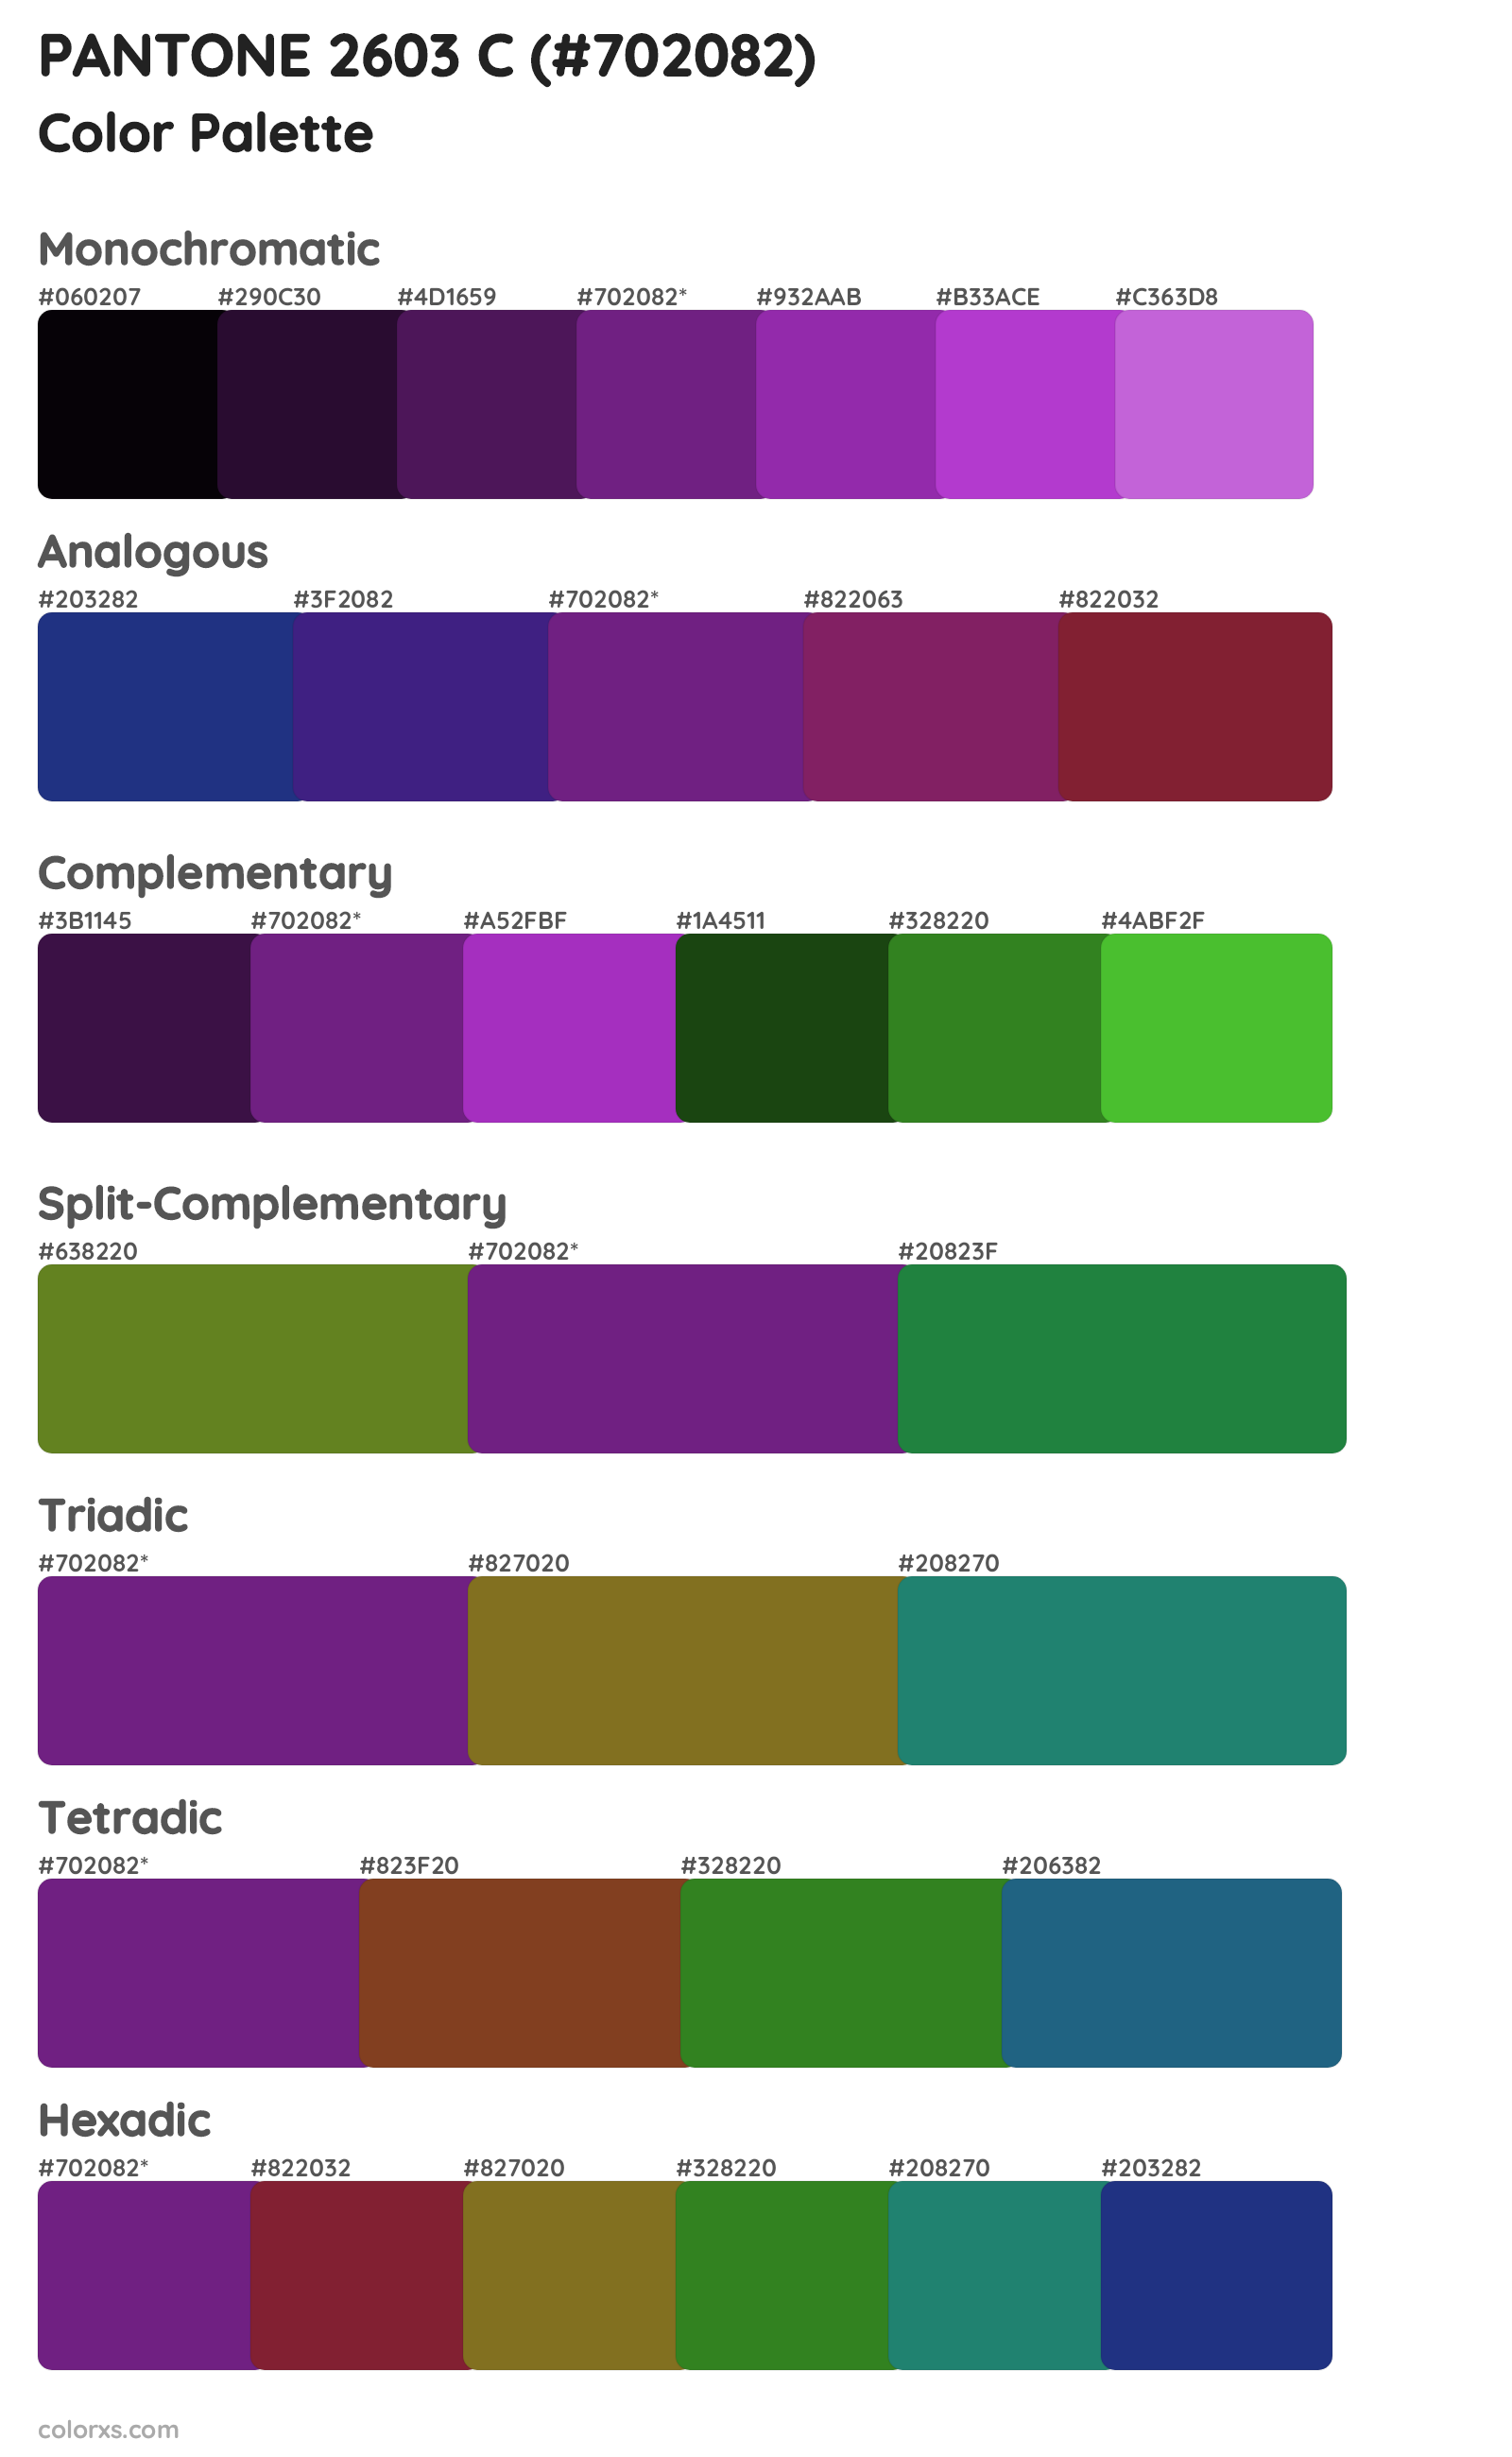 PANTONE 2603 C Color Scheme Palettes